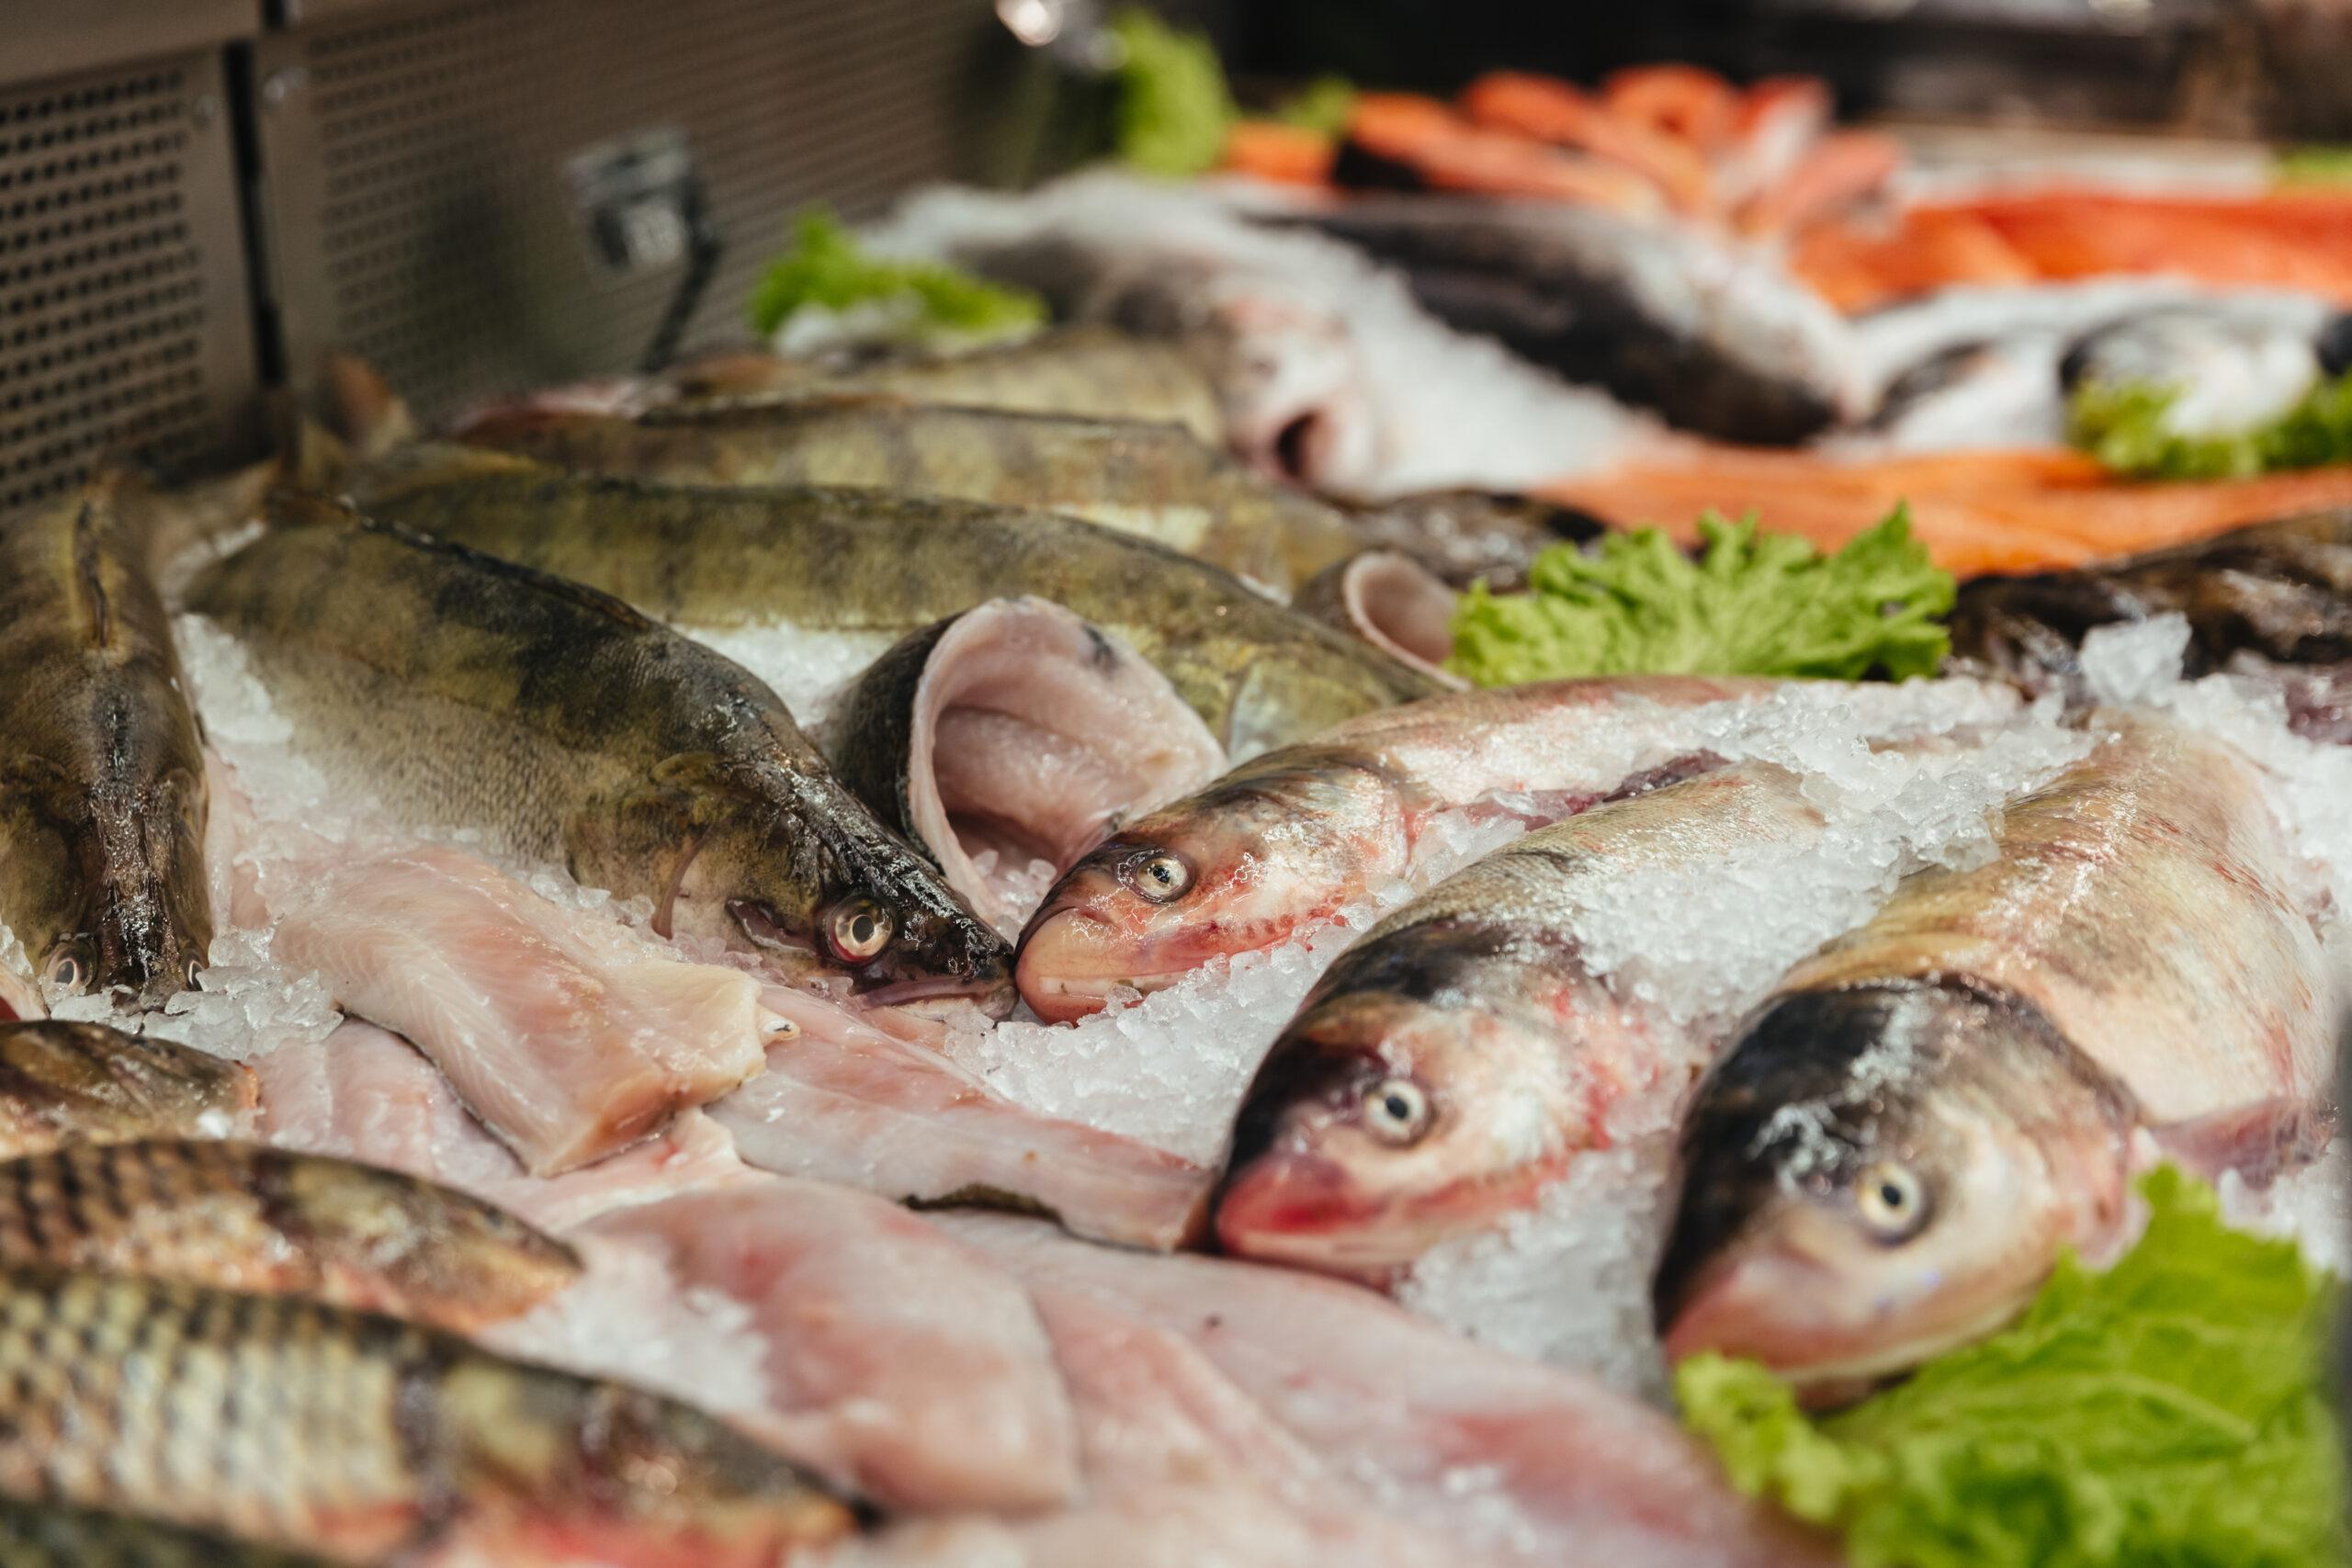 Investigadores do ISPUP apresentam recomendações sobre o consumo de pescado para população portuguesa